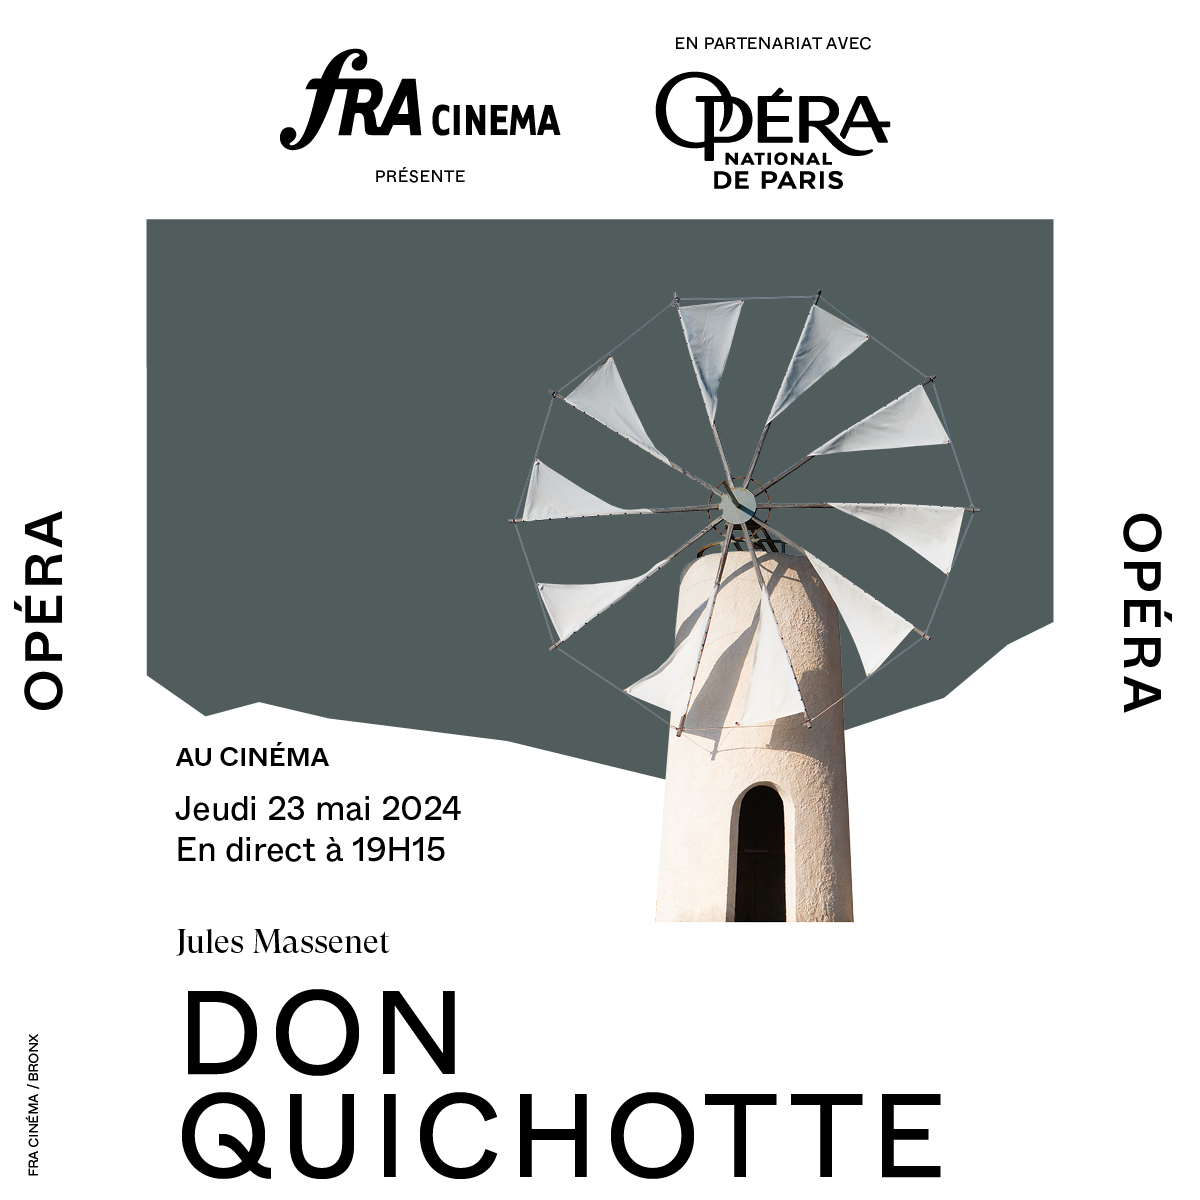 L'Opéra Don Quichotte de Jules Massenet fait son grand retour sur la scène de l'Opéra de Paris après deux décennies sans être joué. Rejoins-nous le 23 mai pour revivre les moments emblématiques de cette histoire intemporelle, diffusés en direct dans les cinémas CGR !